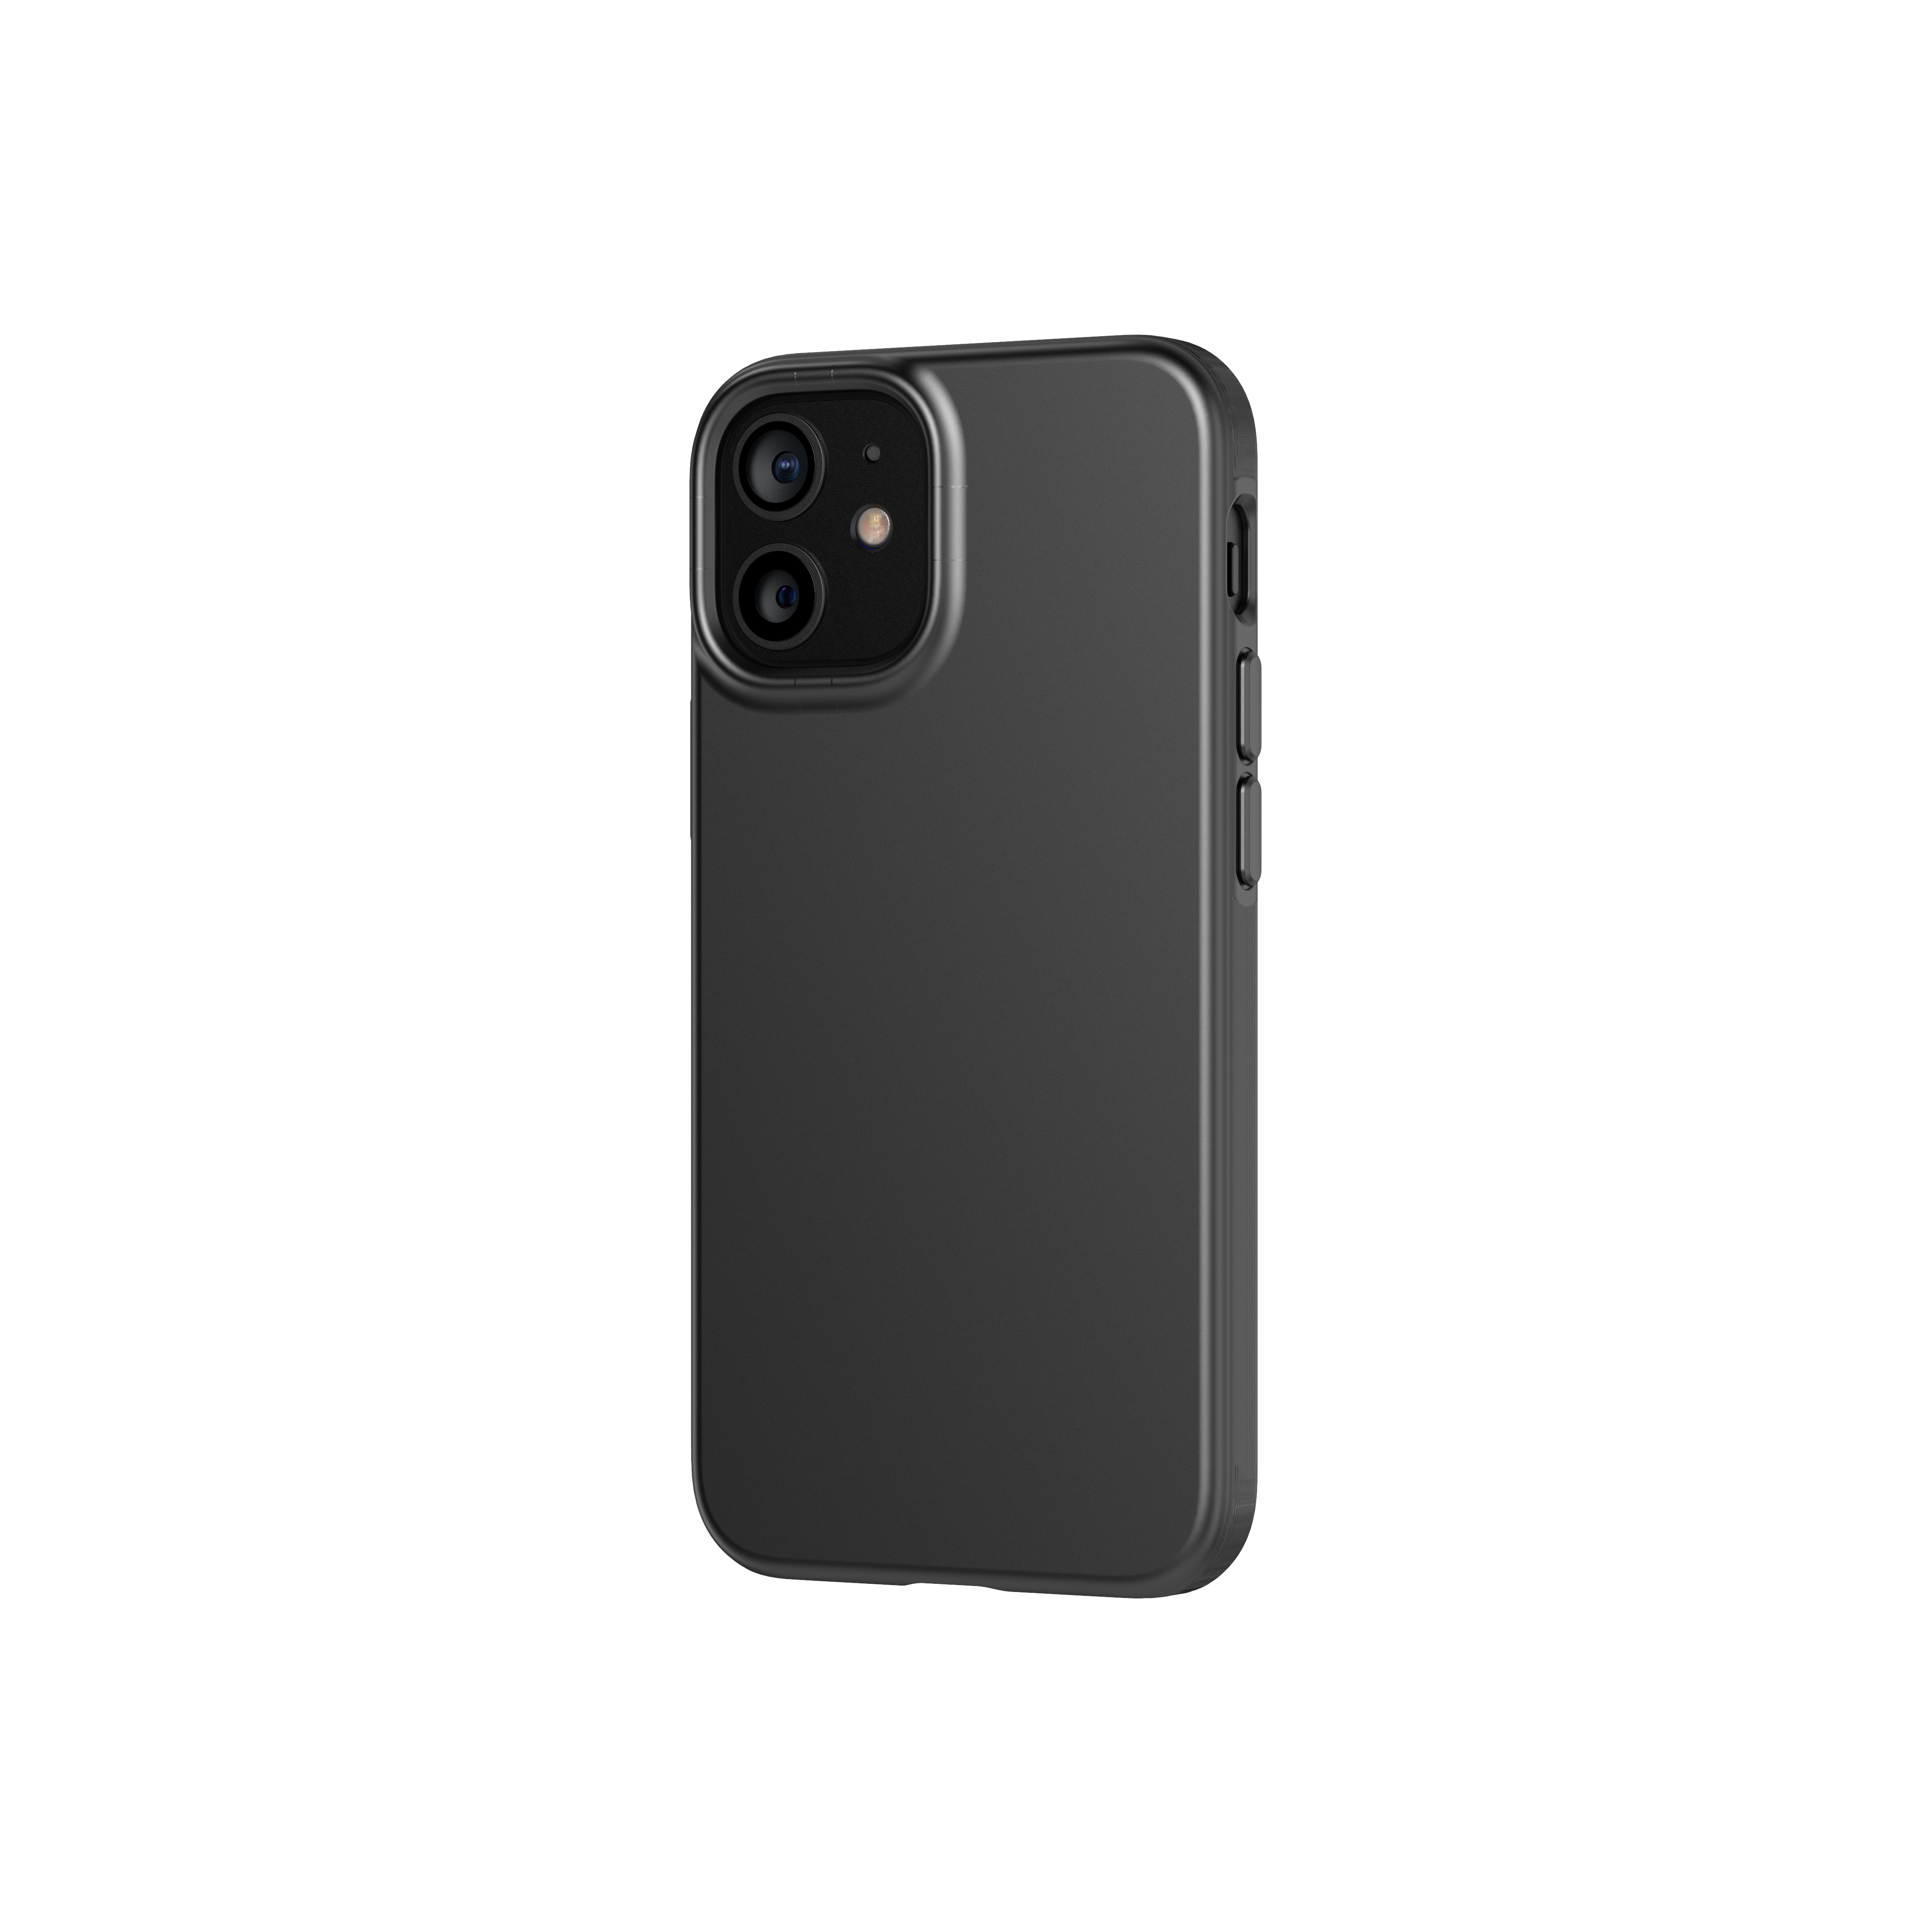 Evo Slim Case iPhone 12 Mini Charcoal Black